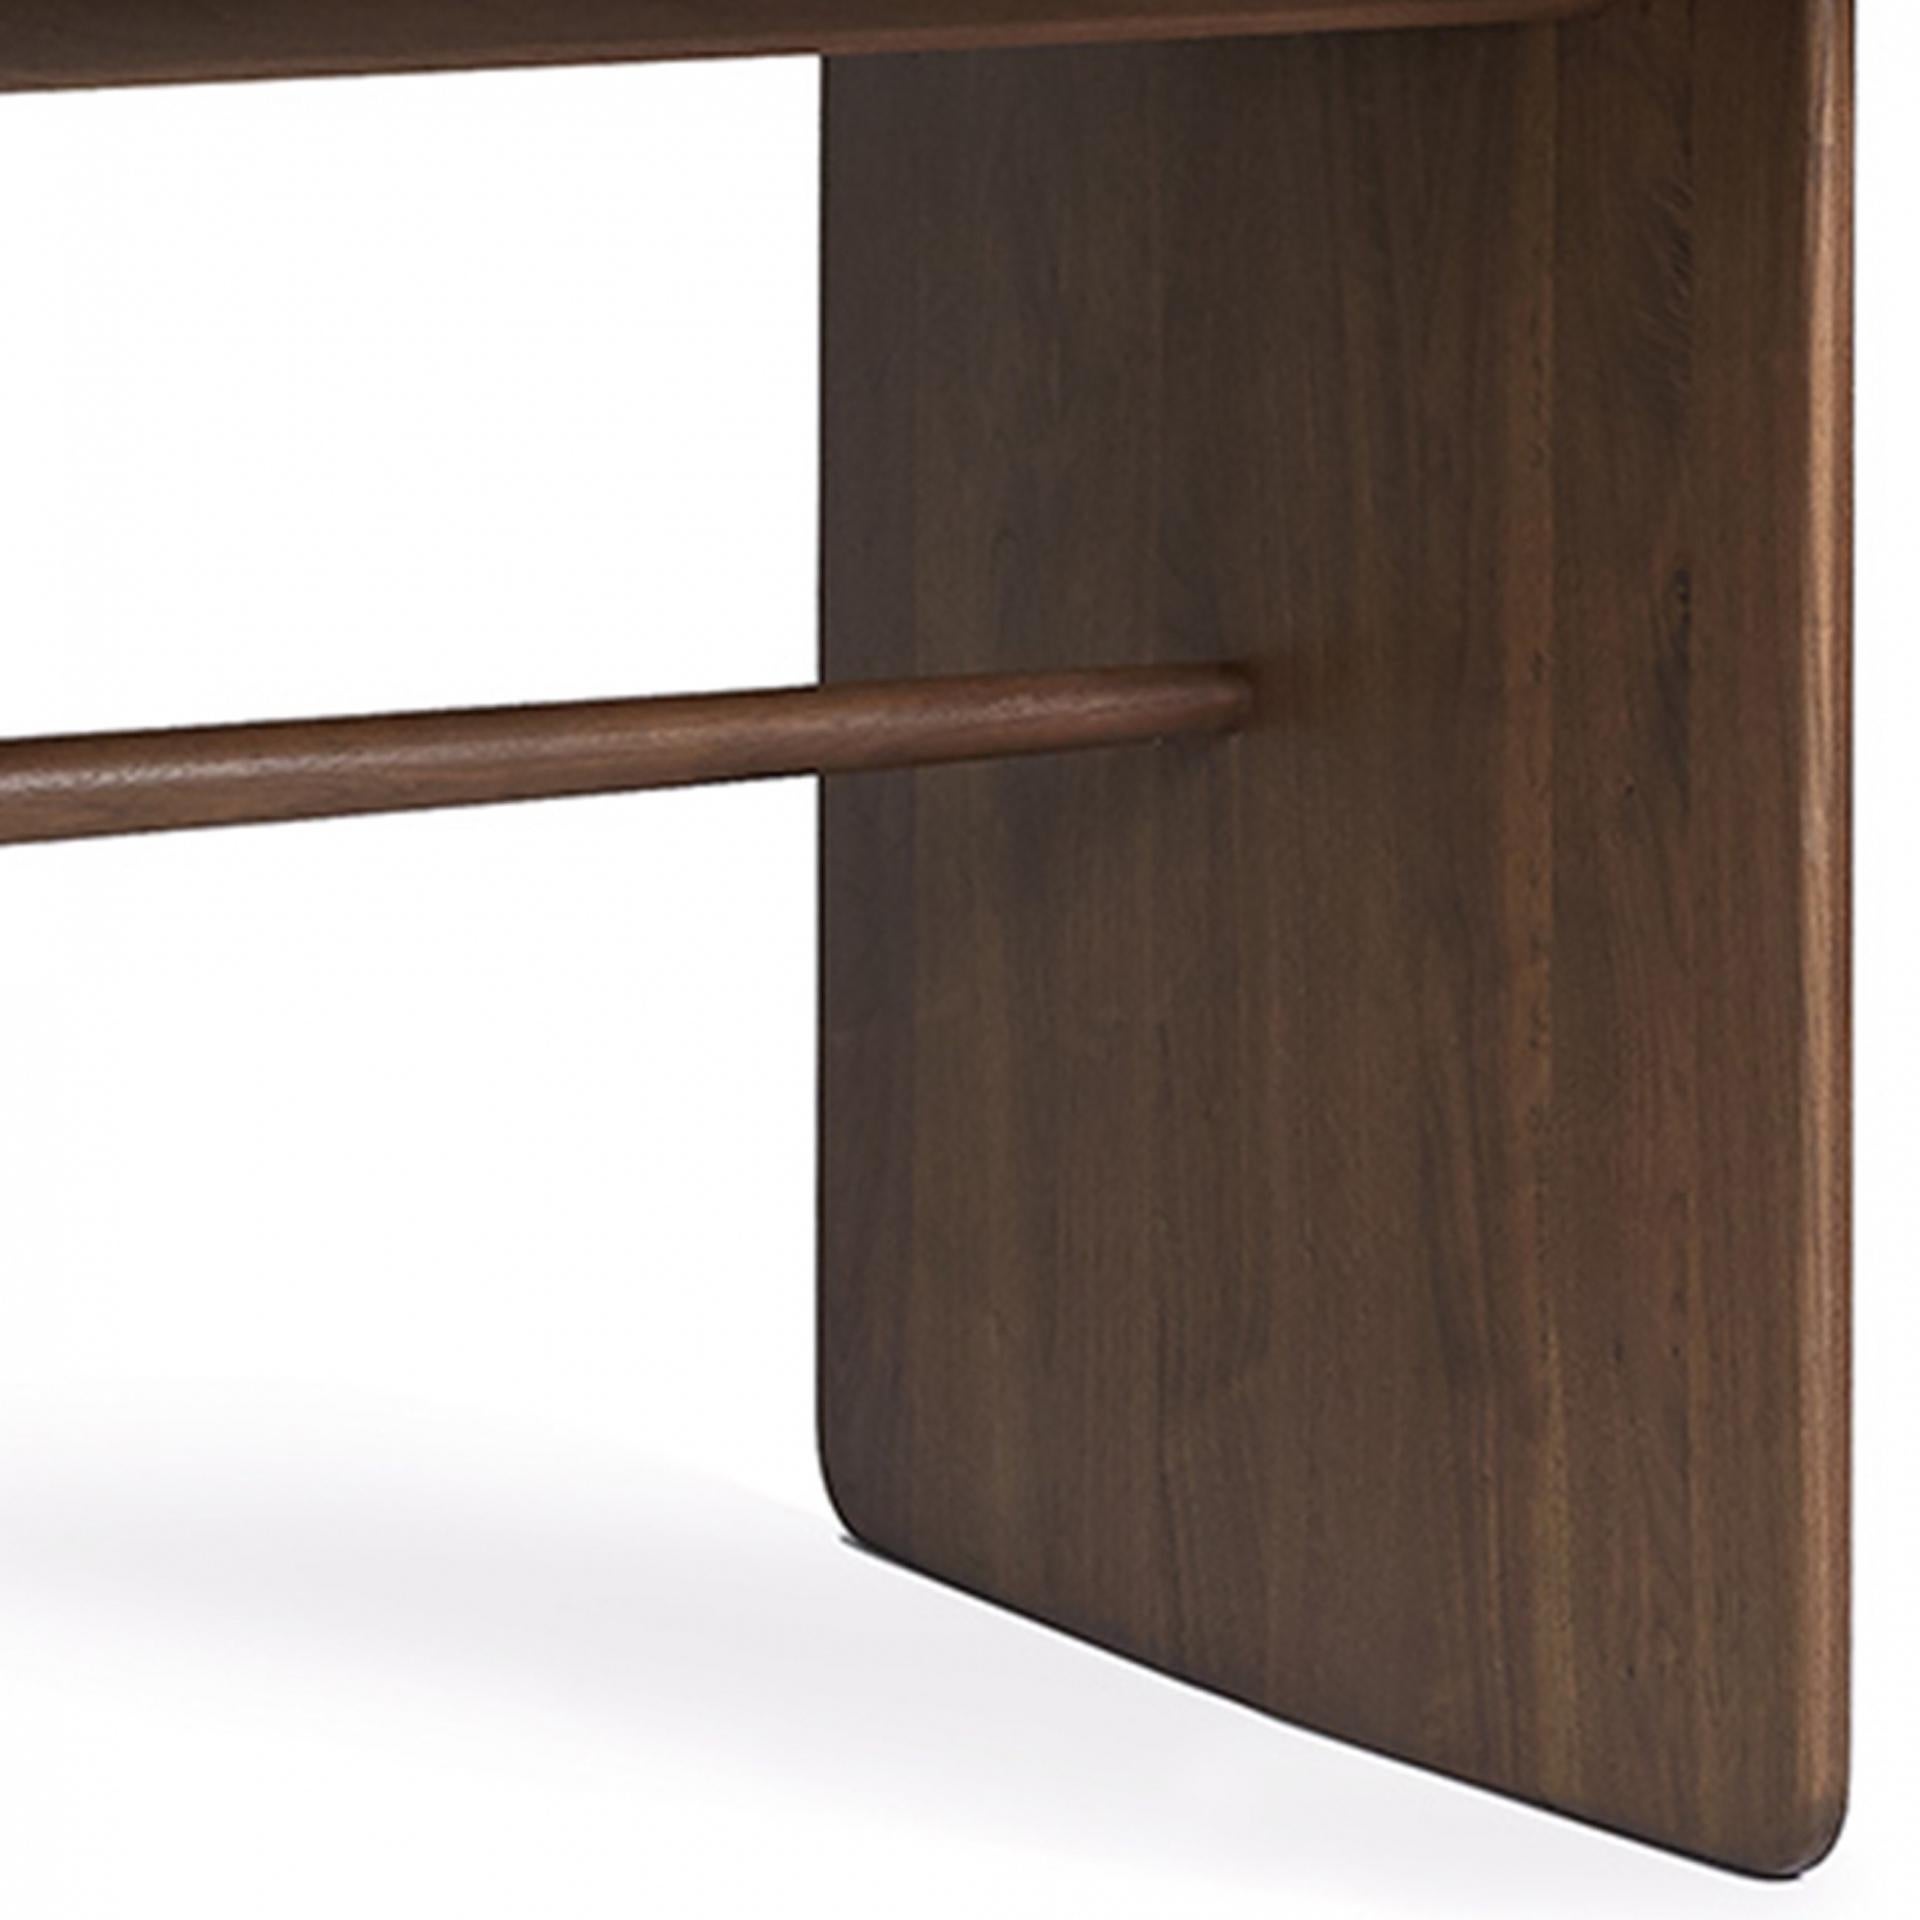 Conçu par Norm Architects, 2019

Polyvalentes et intemporelles, les courbes organiques de la GRANDE TABLE PENNON sont l'expression tangible du minimalisme nordique propre à Norm Architects. Conçue en 2019, la forme ovale de la TABLE LARGE PENNON